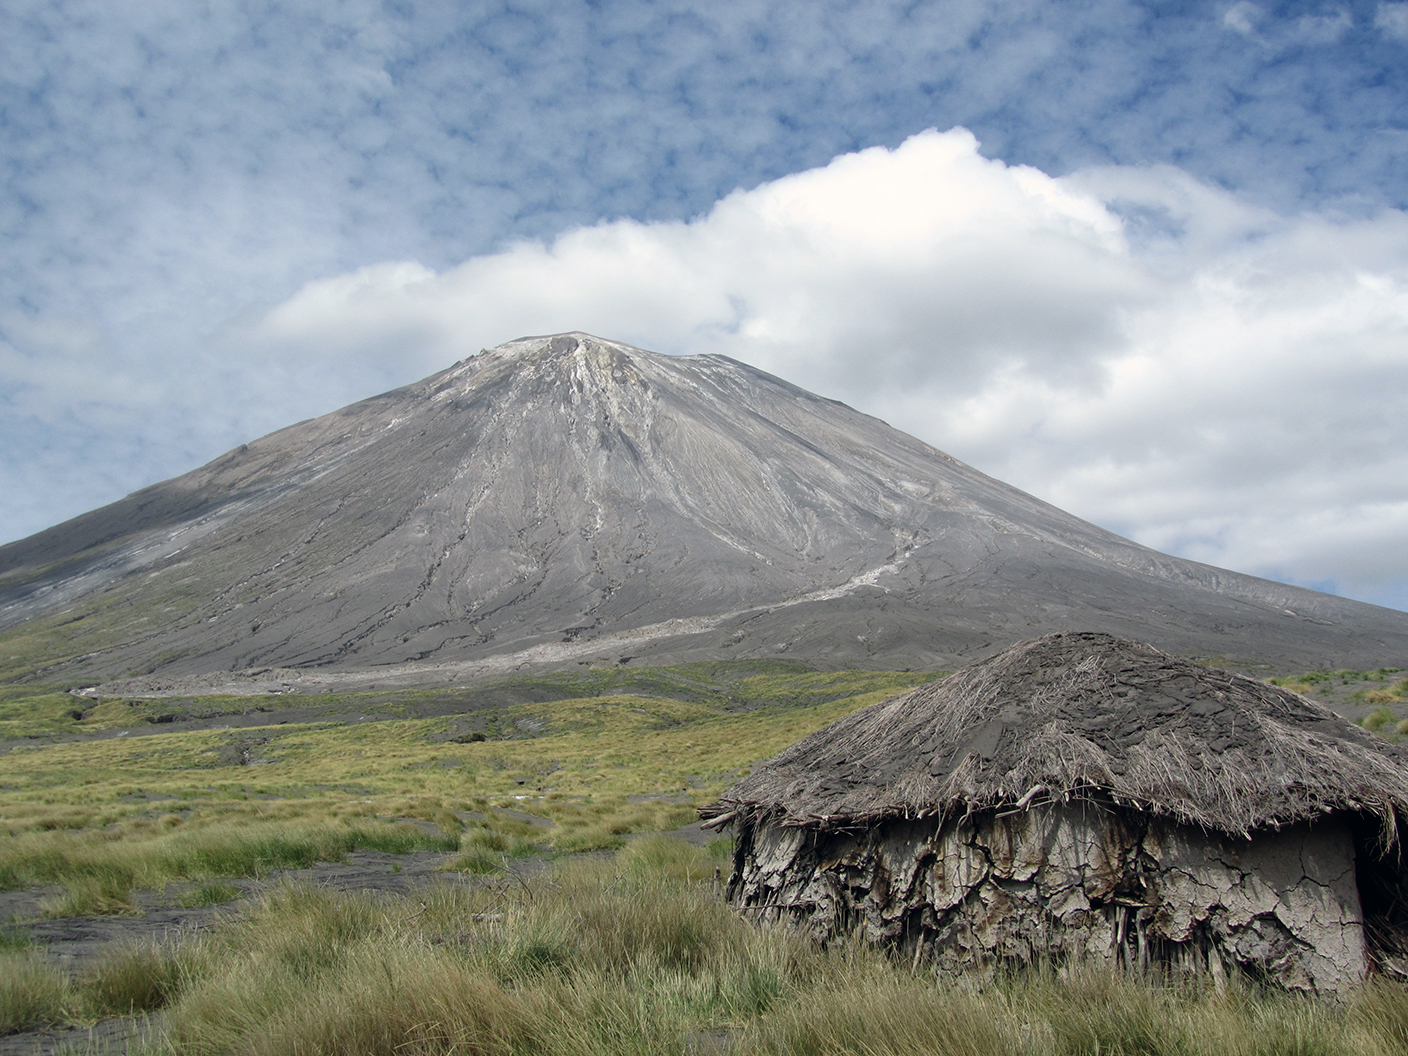 Vergrösserte Ansicht: Bild des Vulkans Oldoinyo Lengai